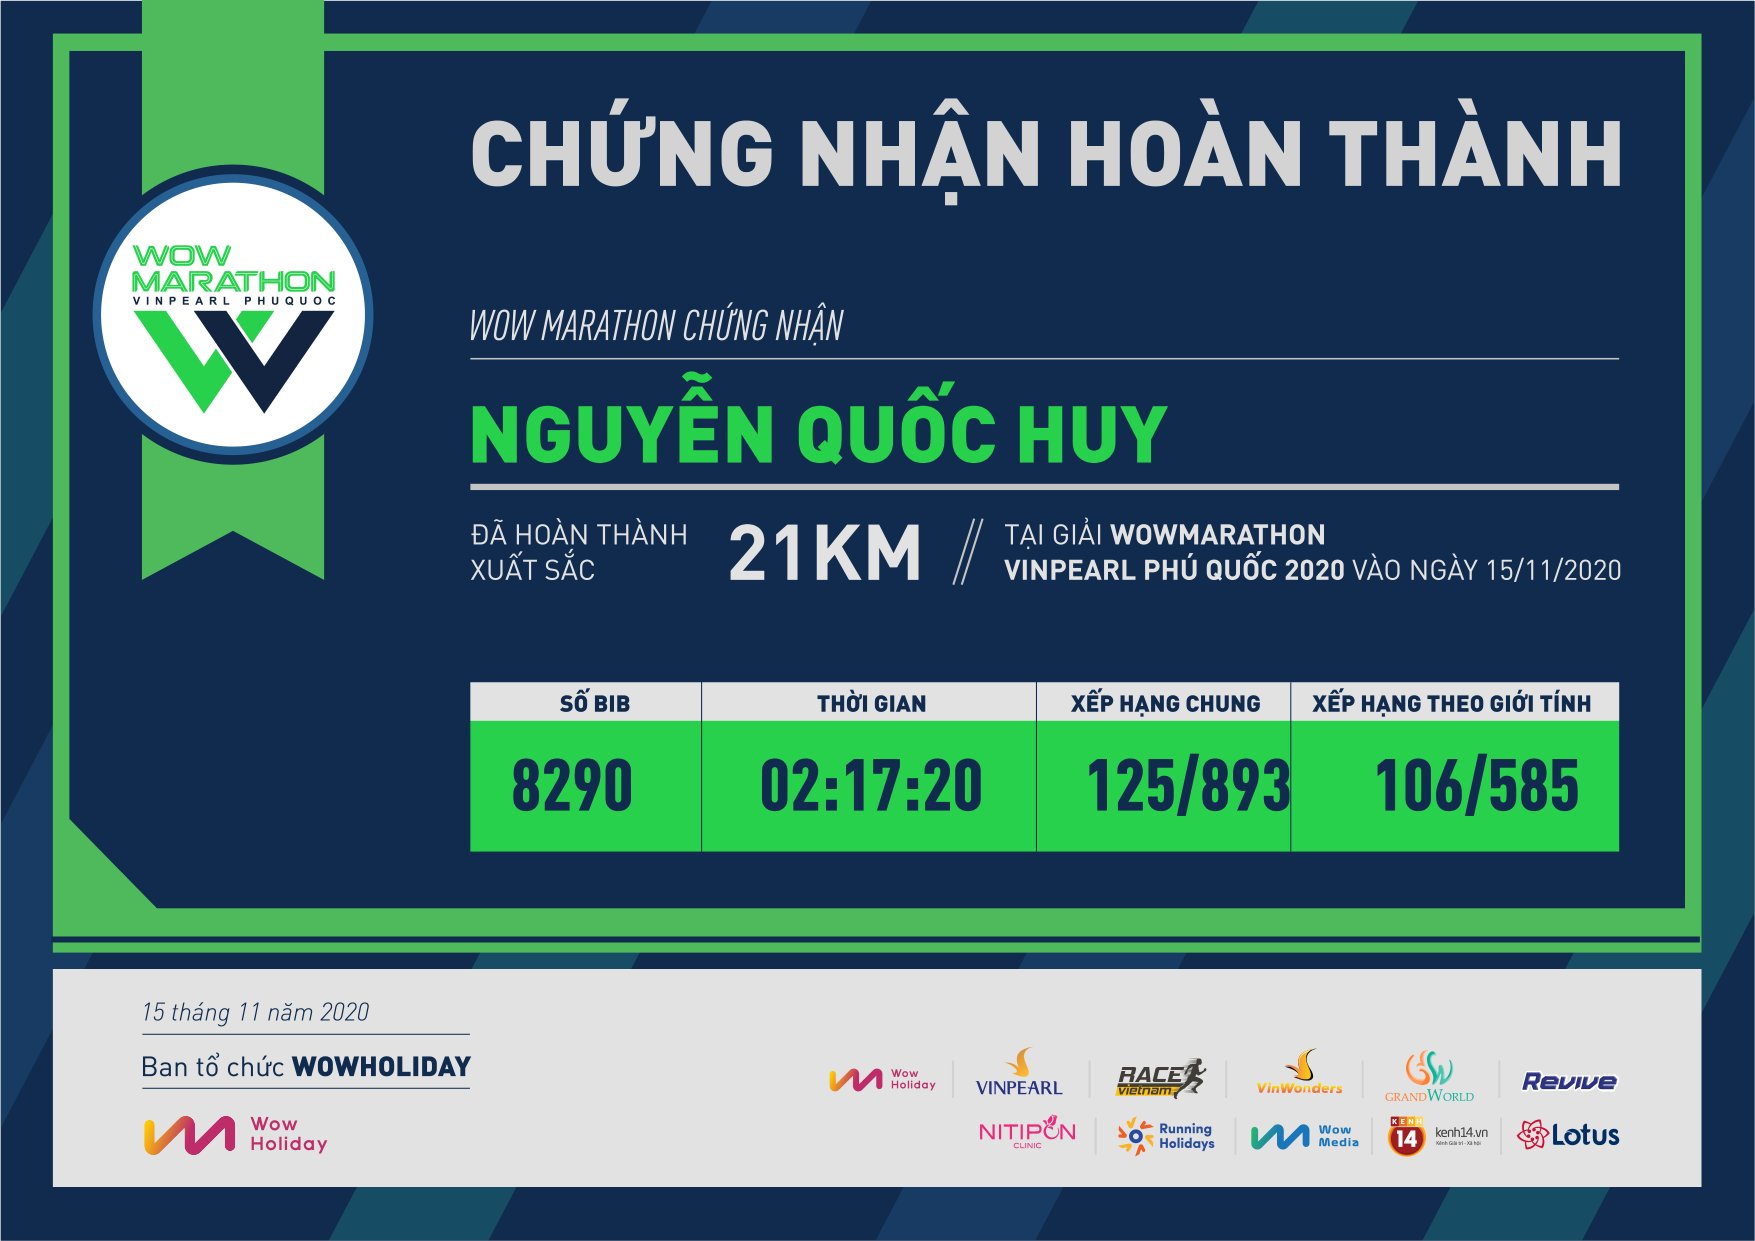 8290 - Nguyễn Quốc Huy